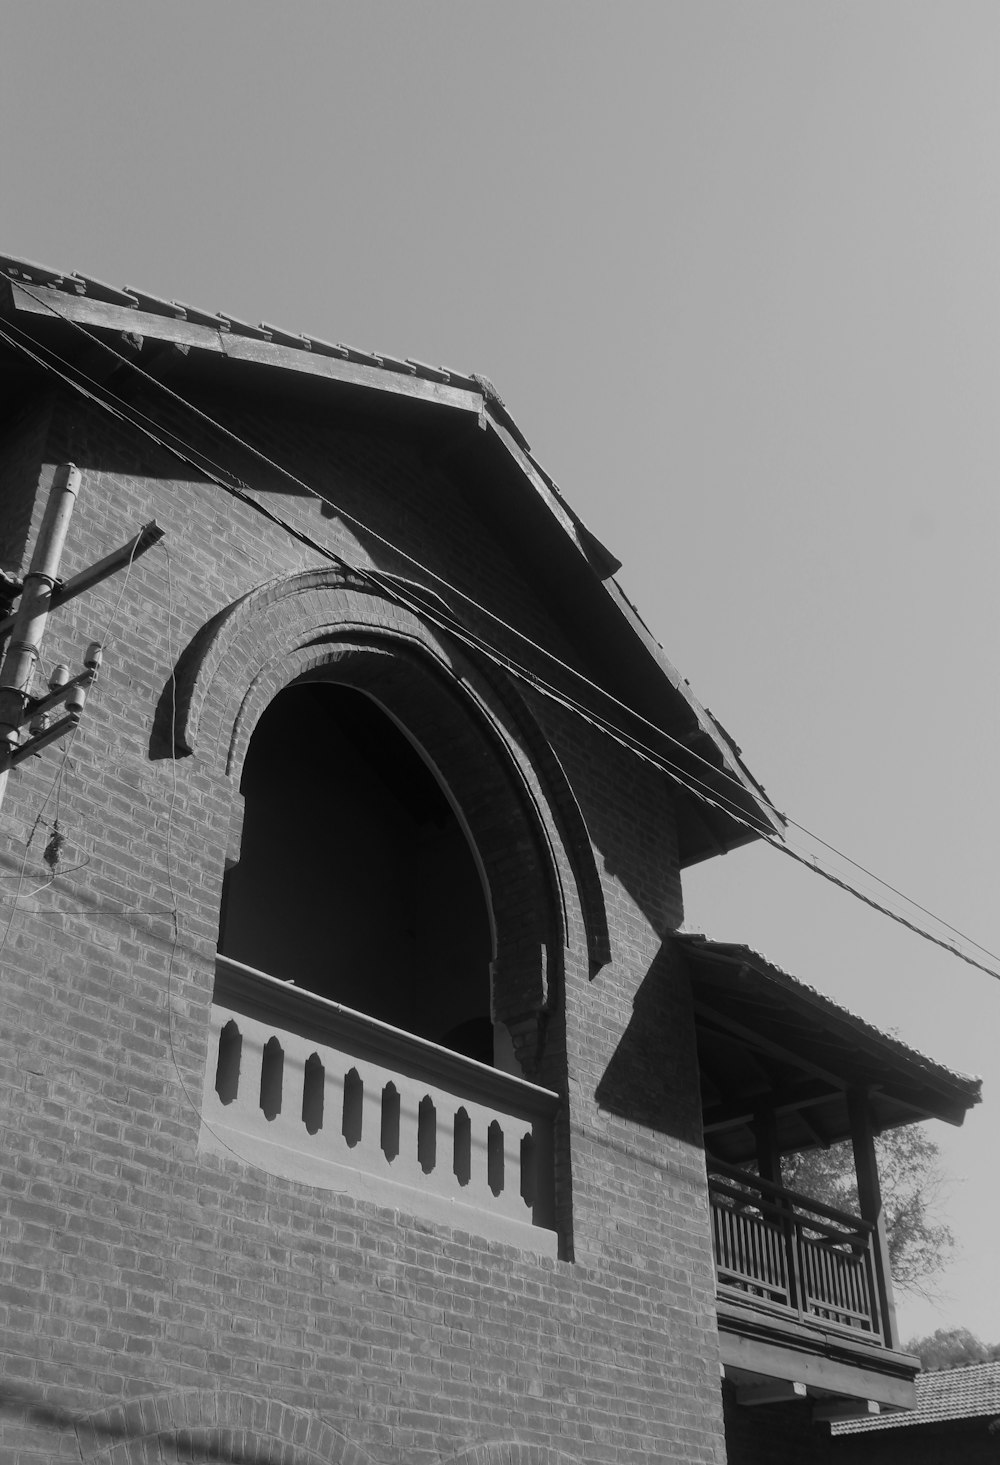 Una foto en blanco y negro de un edificio de ladrillo